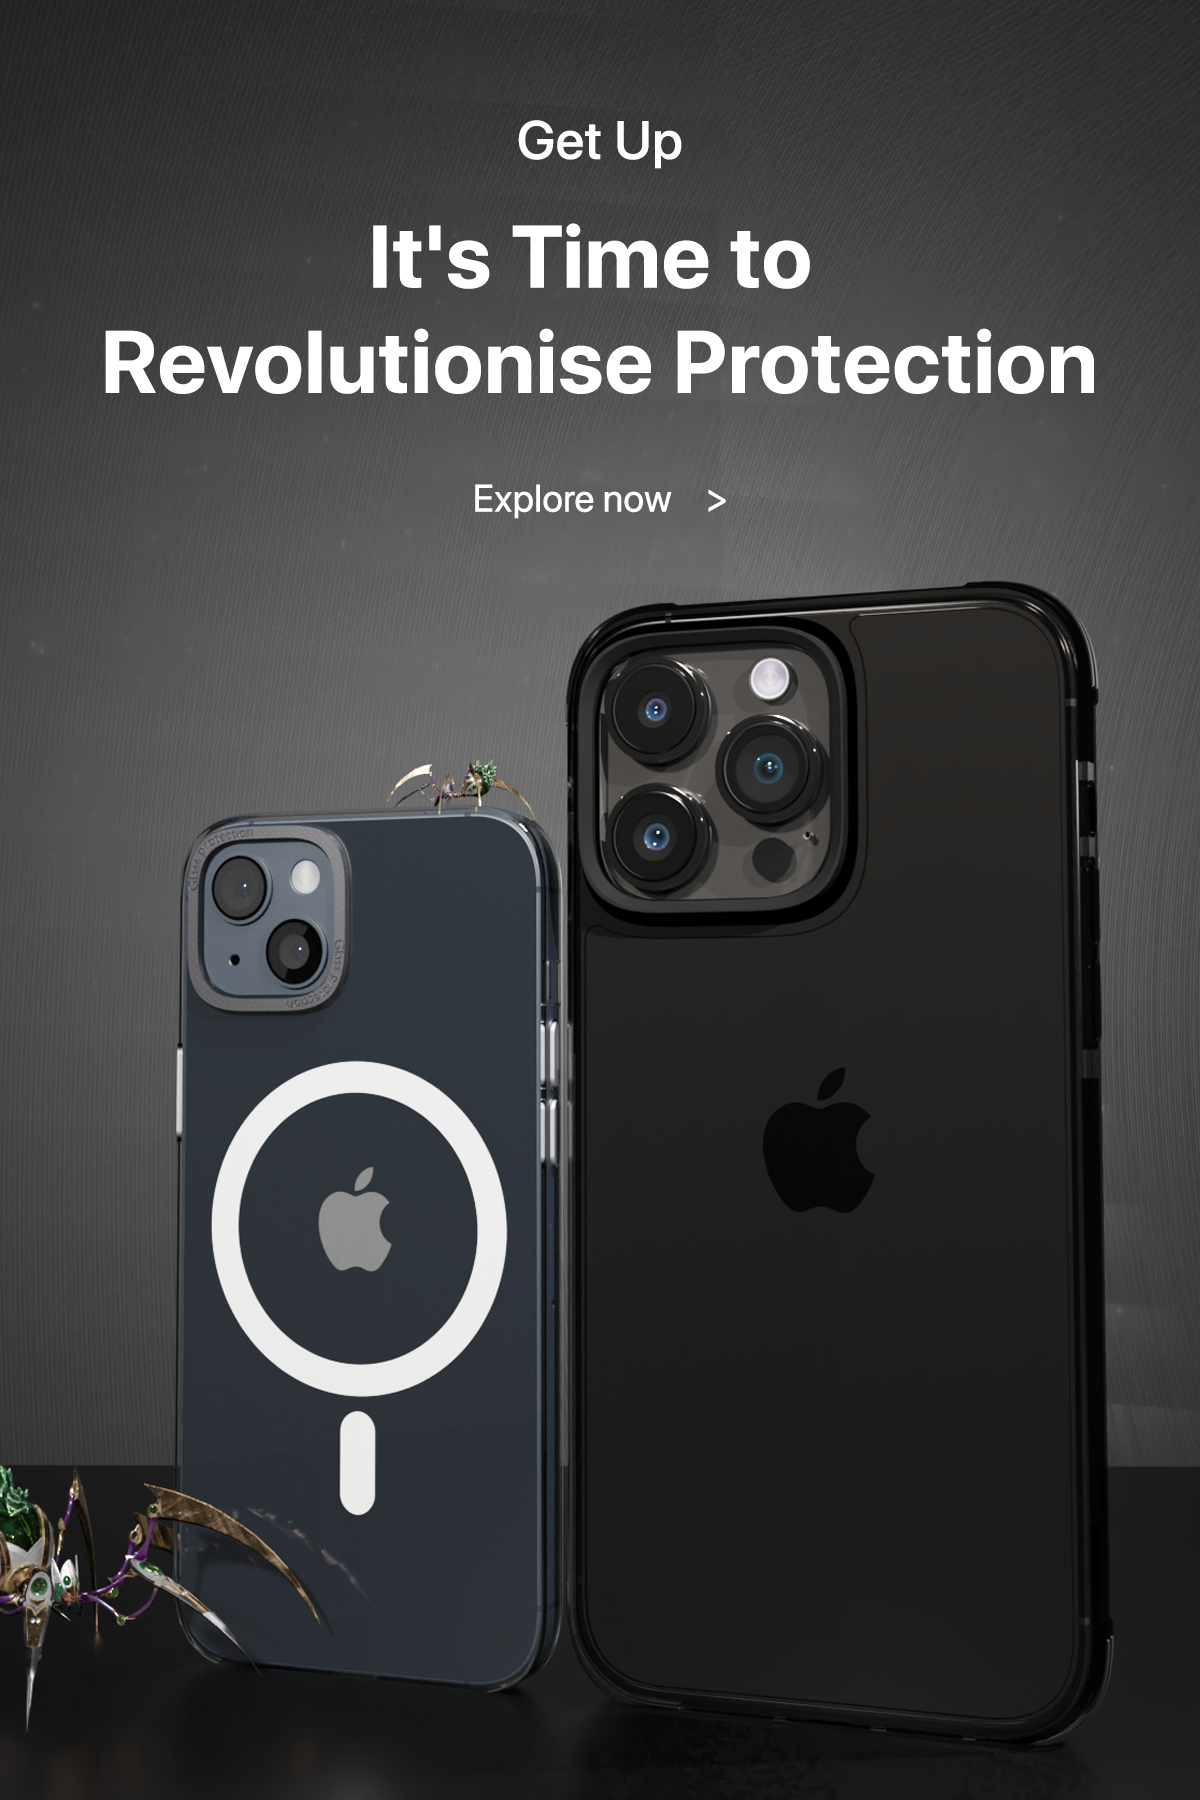 Premium Custom Phone Cover – Casedear